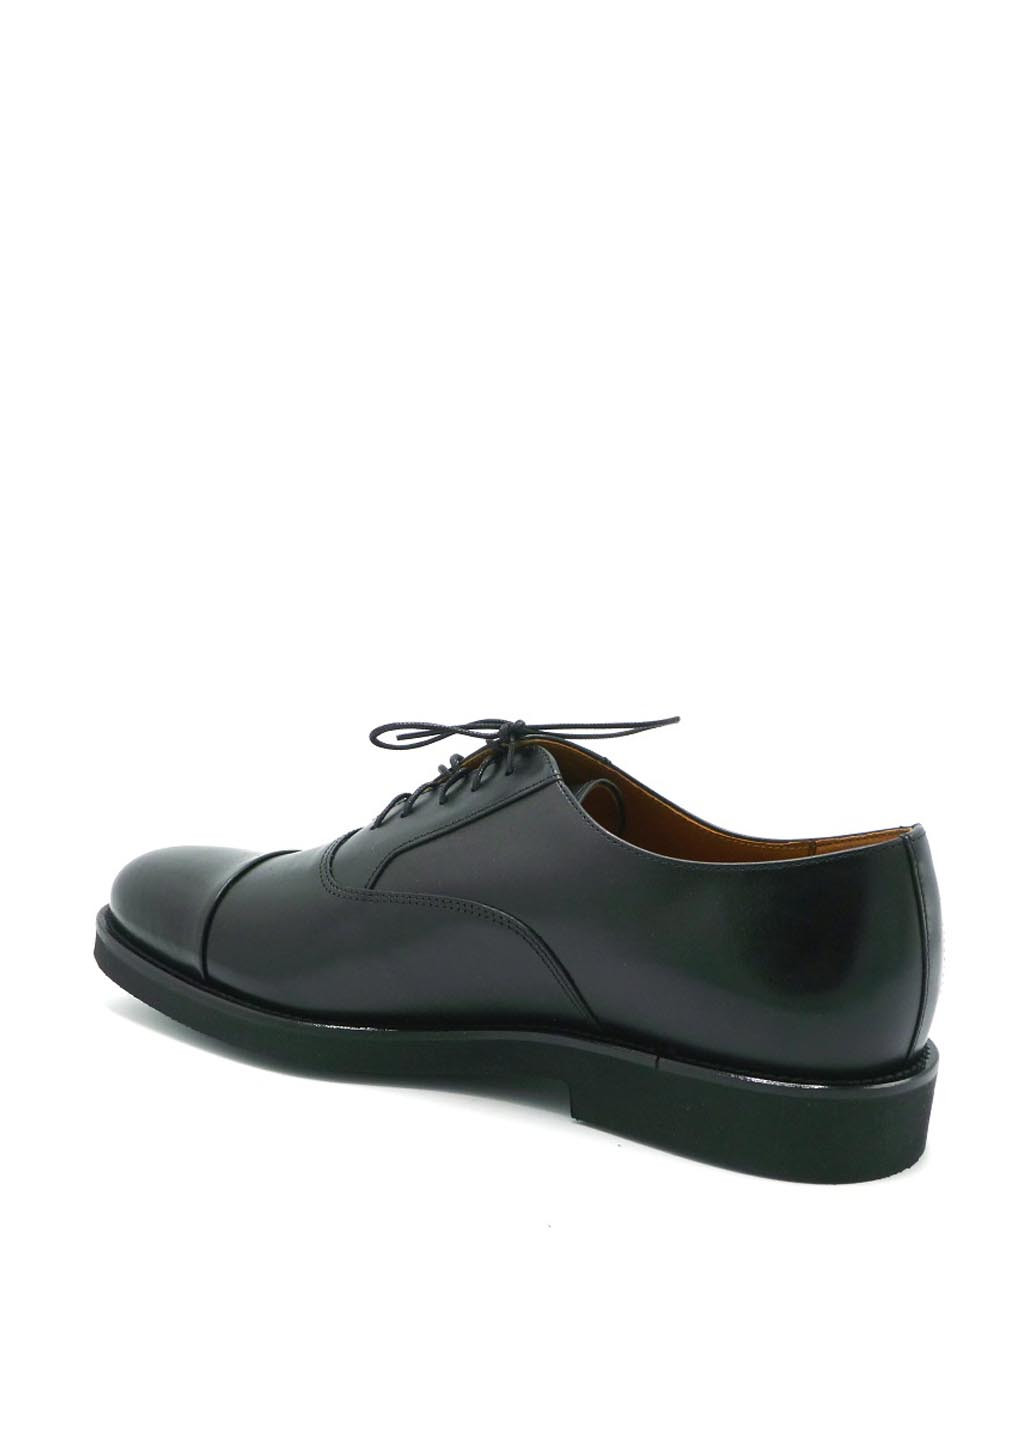 Черные классические туфли Rylko на шнурках